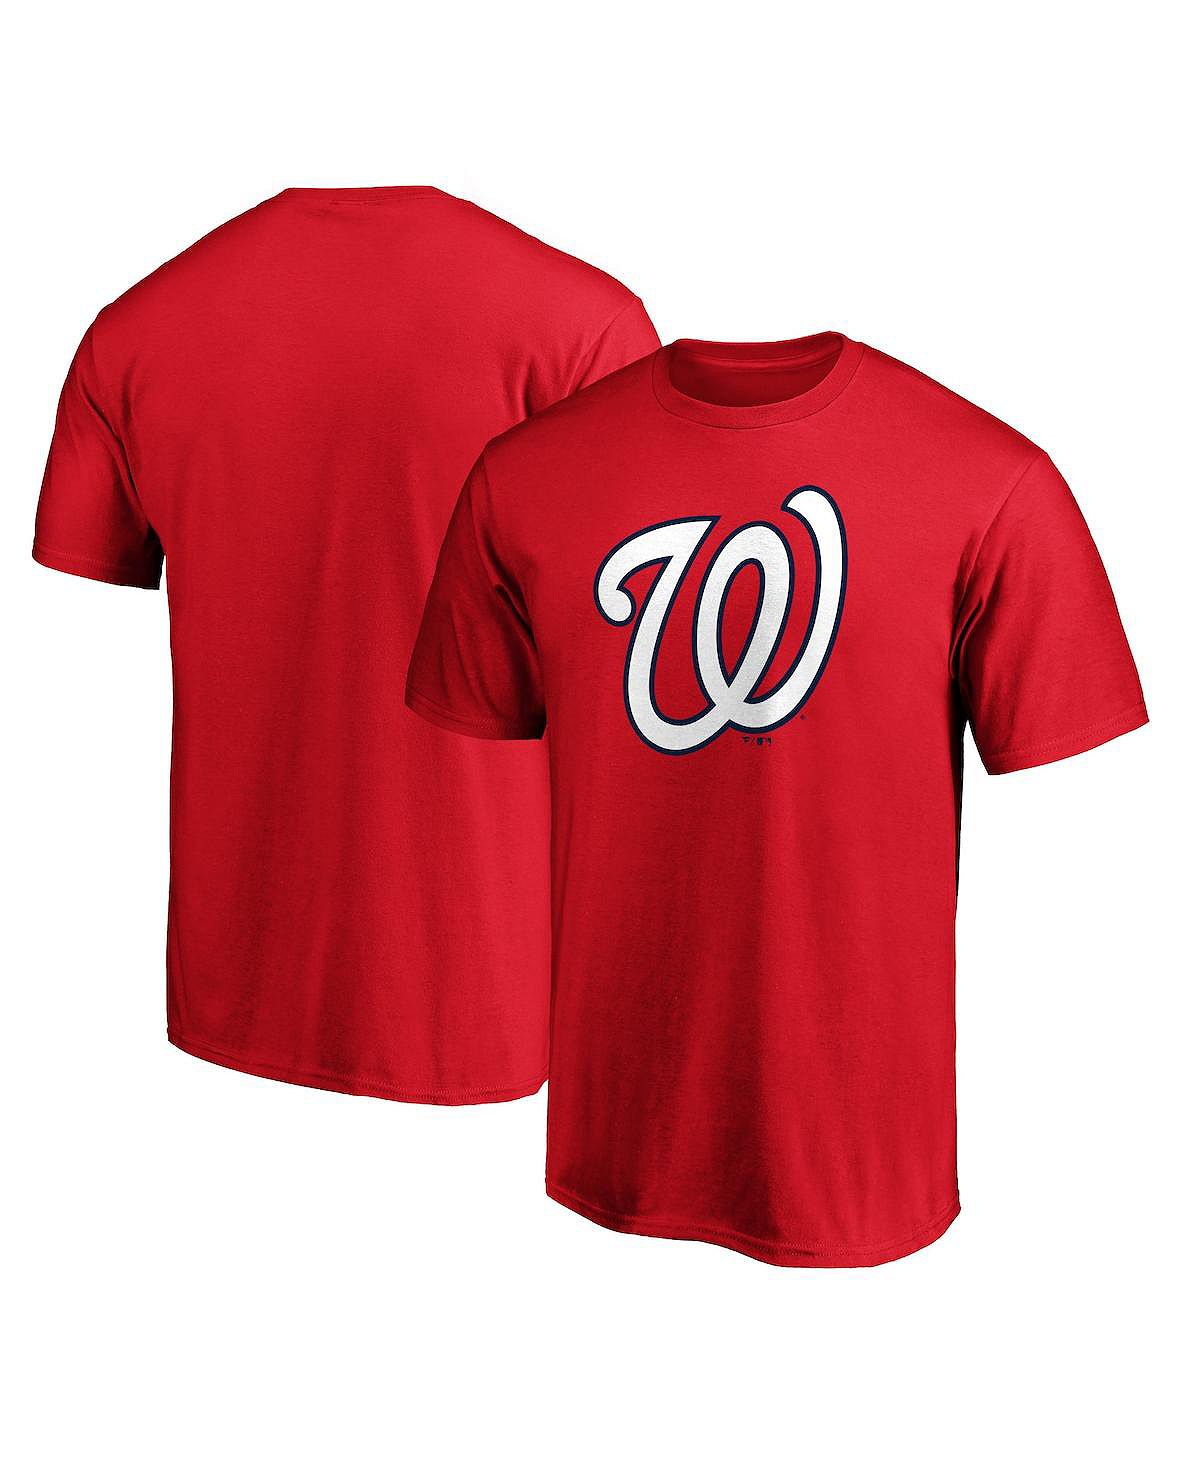 Мужская фирменная красная футболка с официальным логотипом washington nationals Fanatics, красный